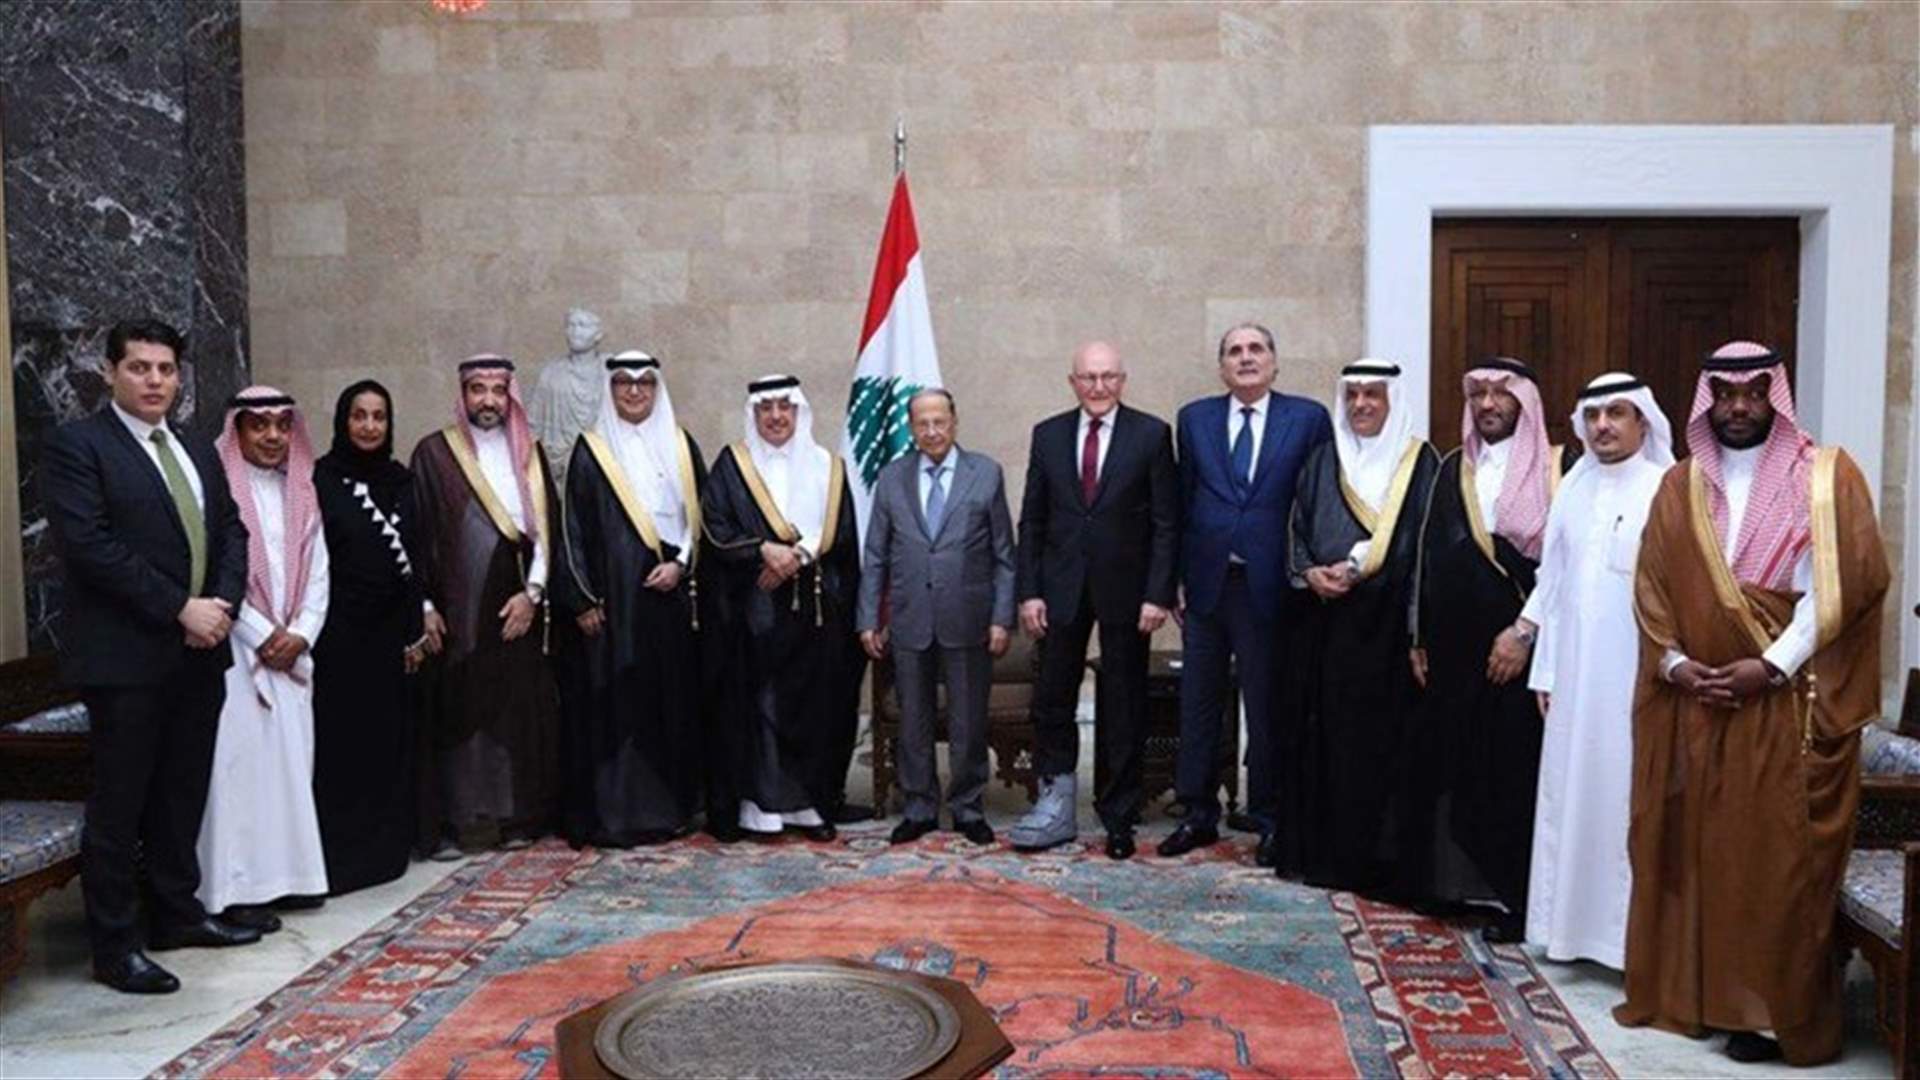 السعودية تؤكد احتضان لبنان والحرص على الاستقرار فيه (الراي)